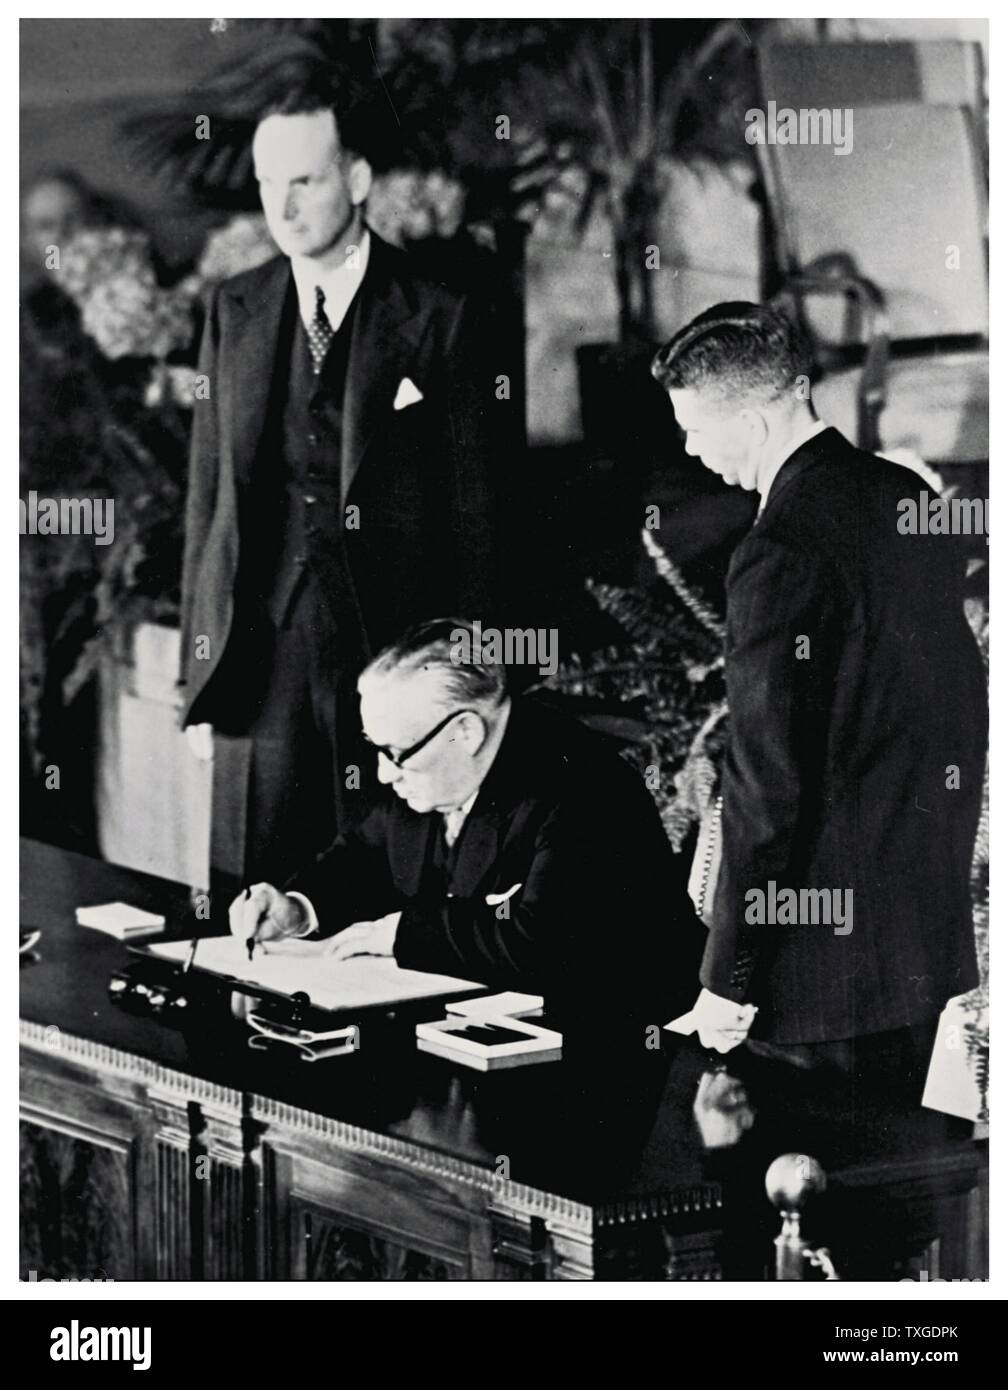 Fotografía de la firma del Tratado del Atlántico Norte. El Tratado del Atlántico Norte, firmado en Washington, D.C., el 4 de abril de 1949, es el tratado constitutivo de la Organización del Tratado del Atlántico Norte (OTAN). Foto de stock